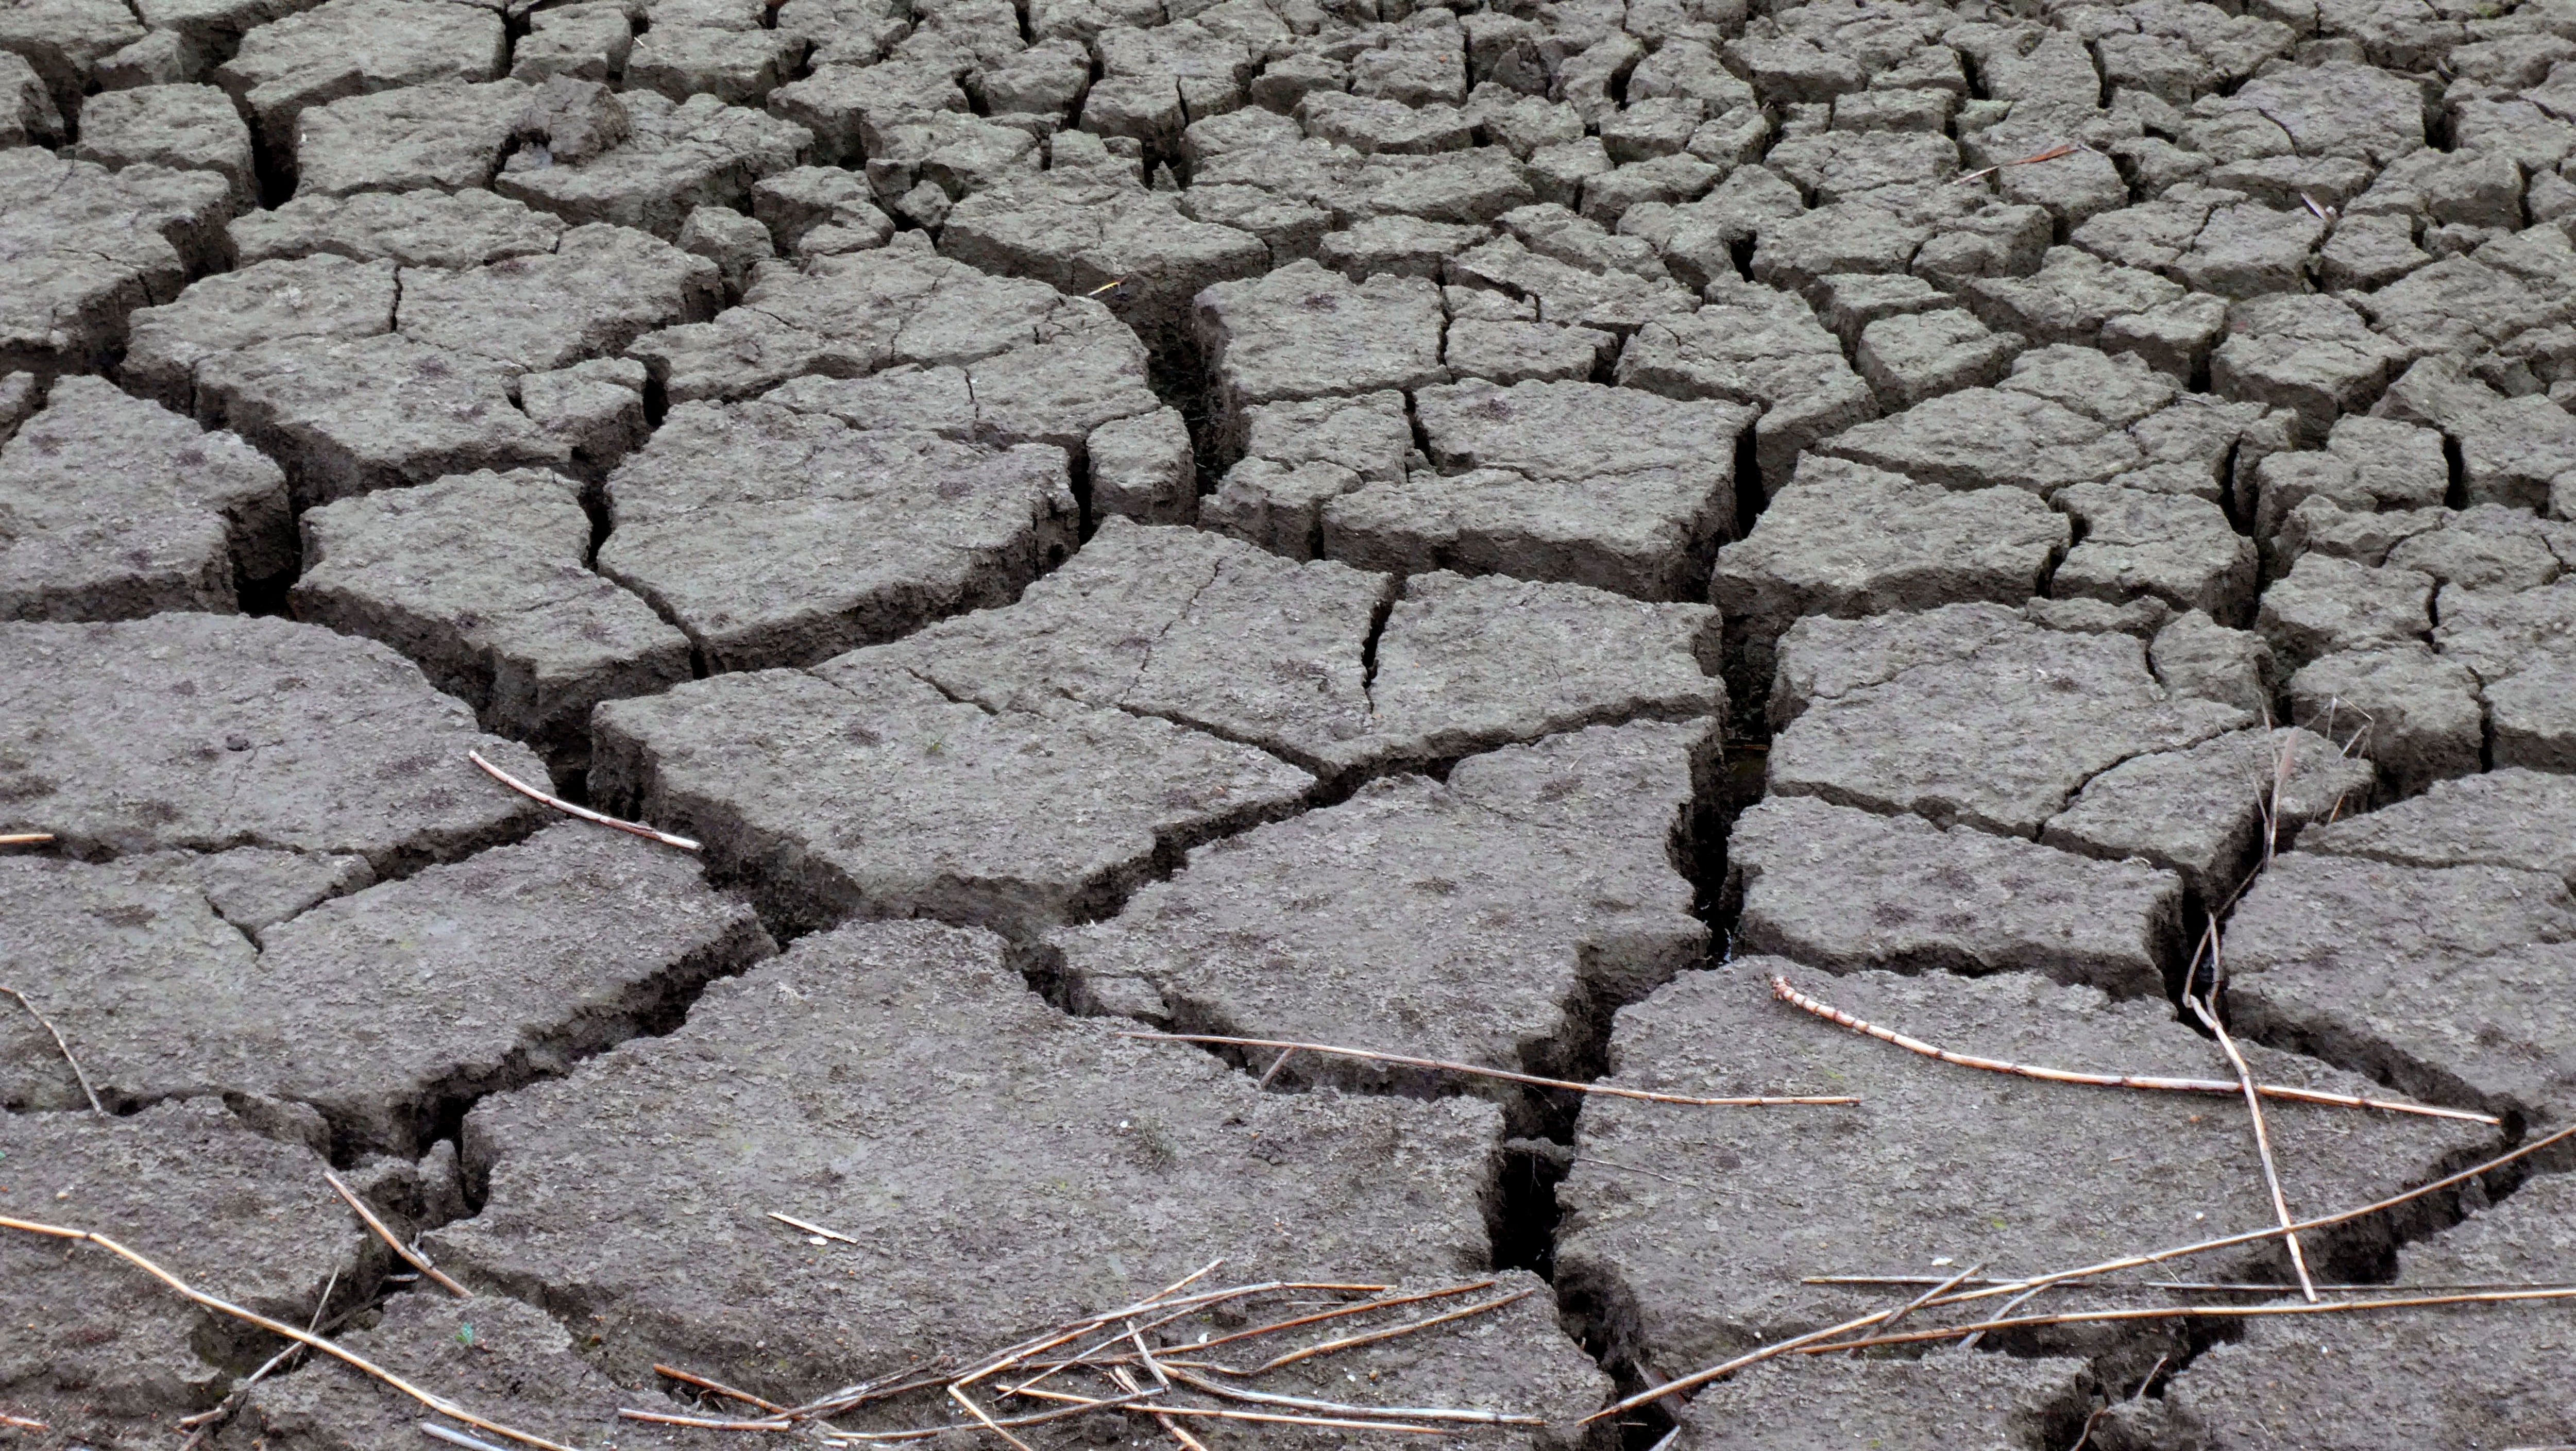 Vista del lecho seco del río Guadiana en Ciudad Real, producto de la sequía a raíz del cambio climático (EFE/ Beldad/Archivo)
